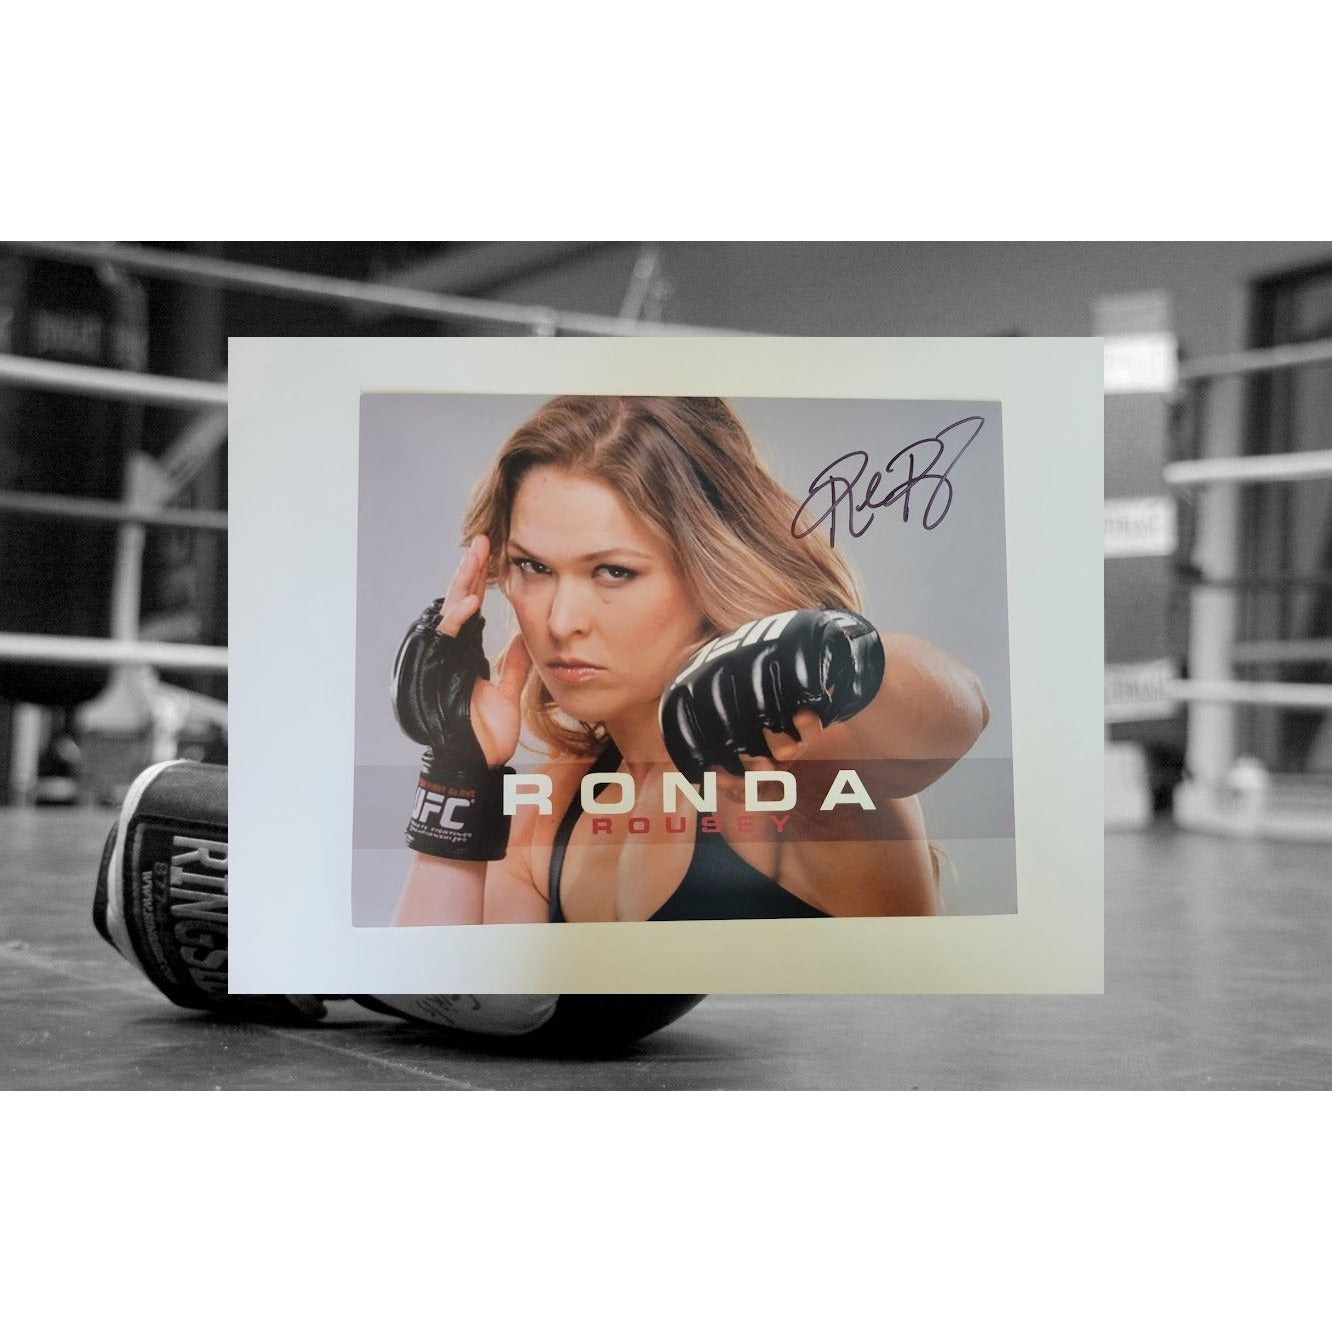 Ronda Rousey 8 x 10 photo signed